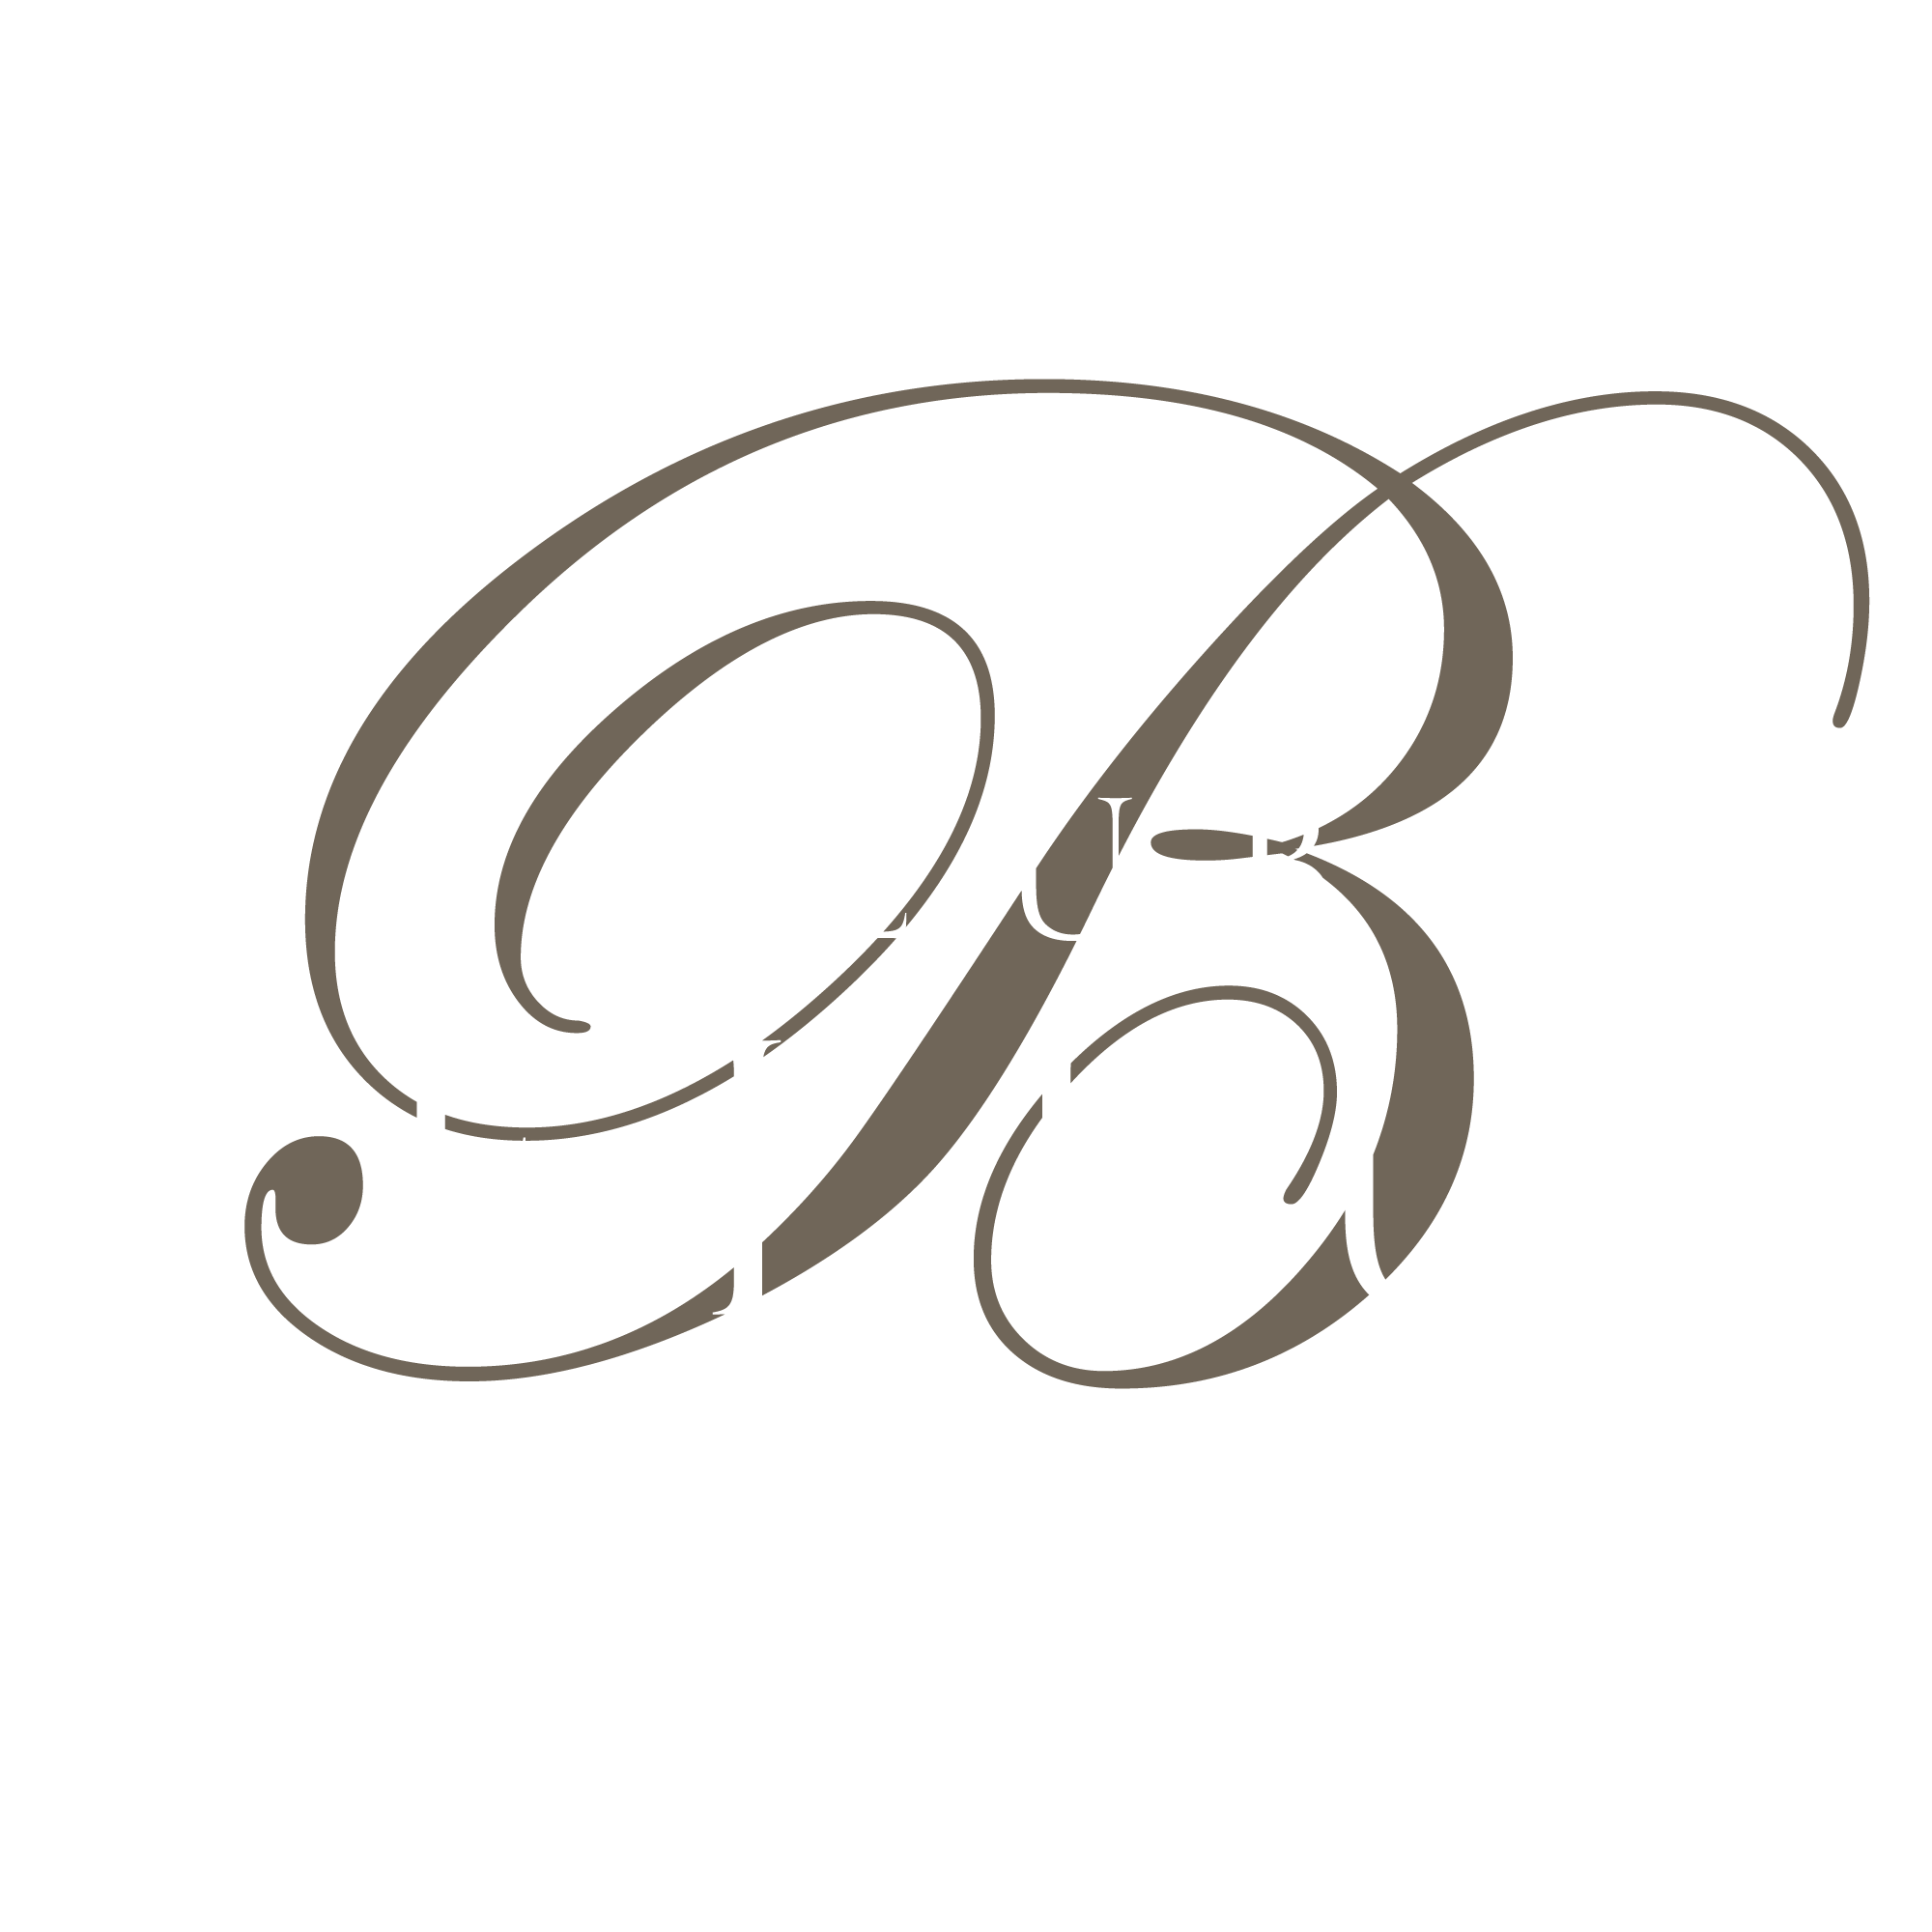 モーション画像の上にのるCLUB BELLUSのロゴ